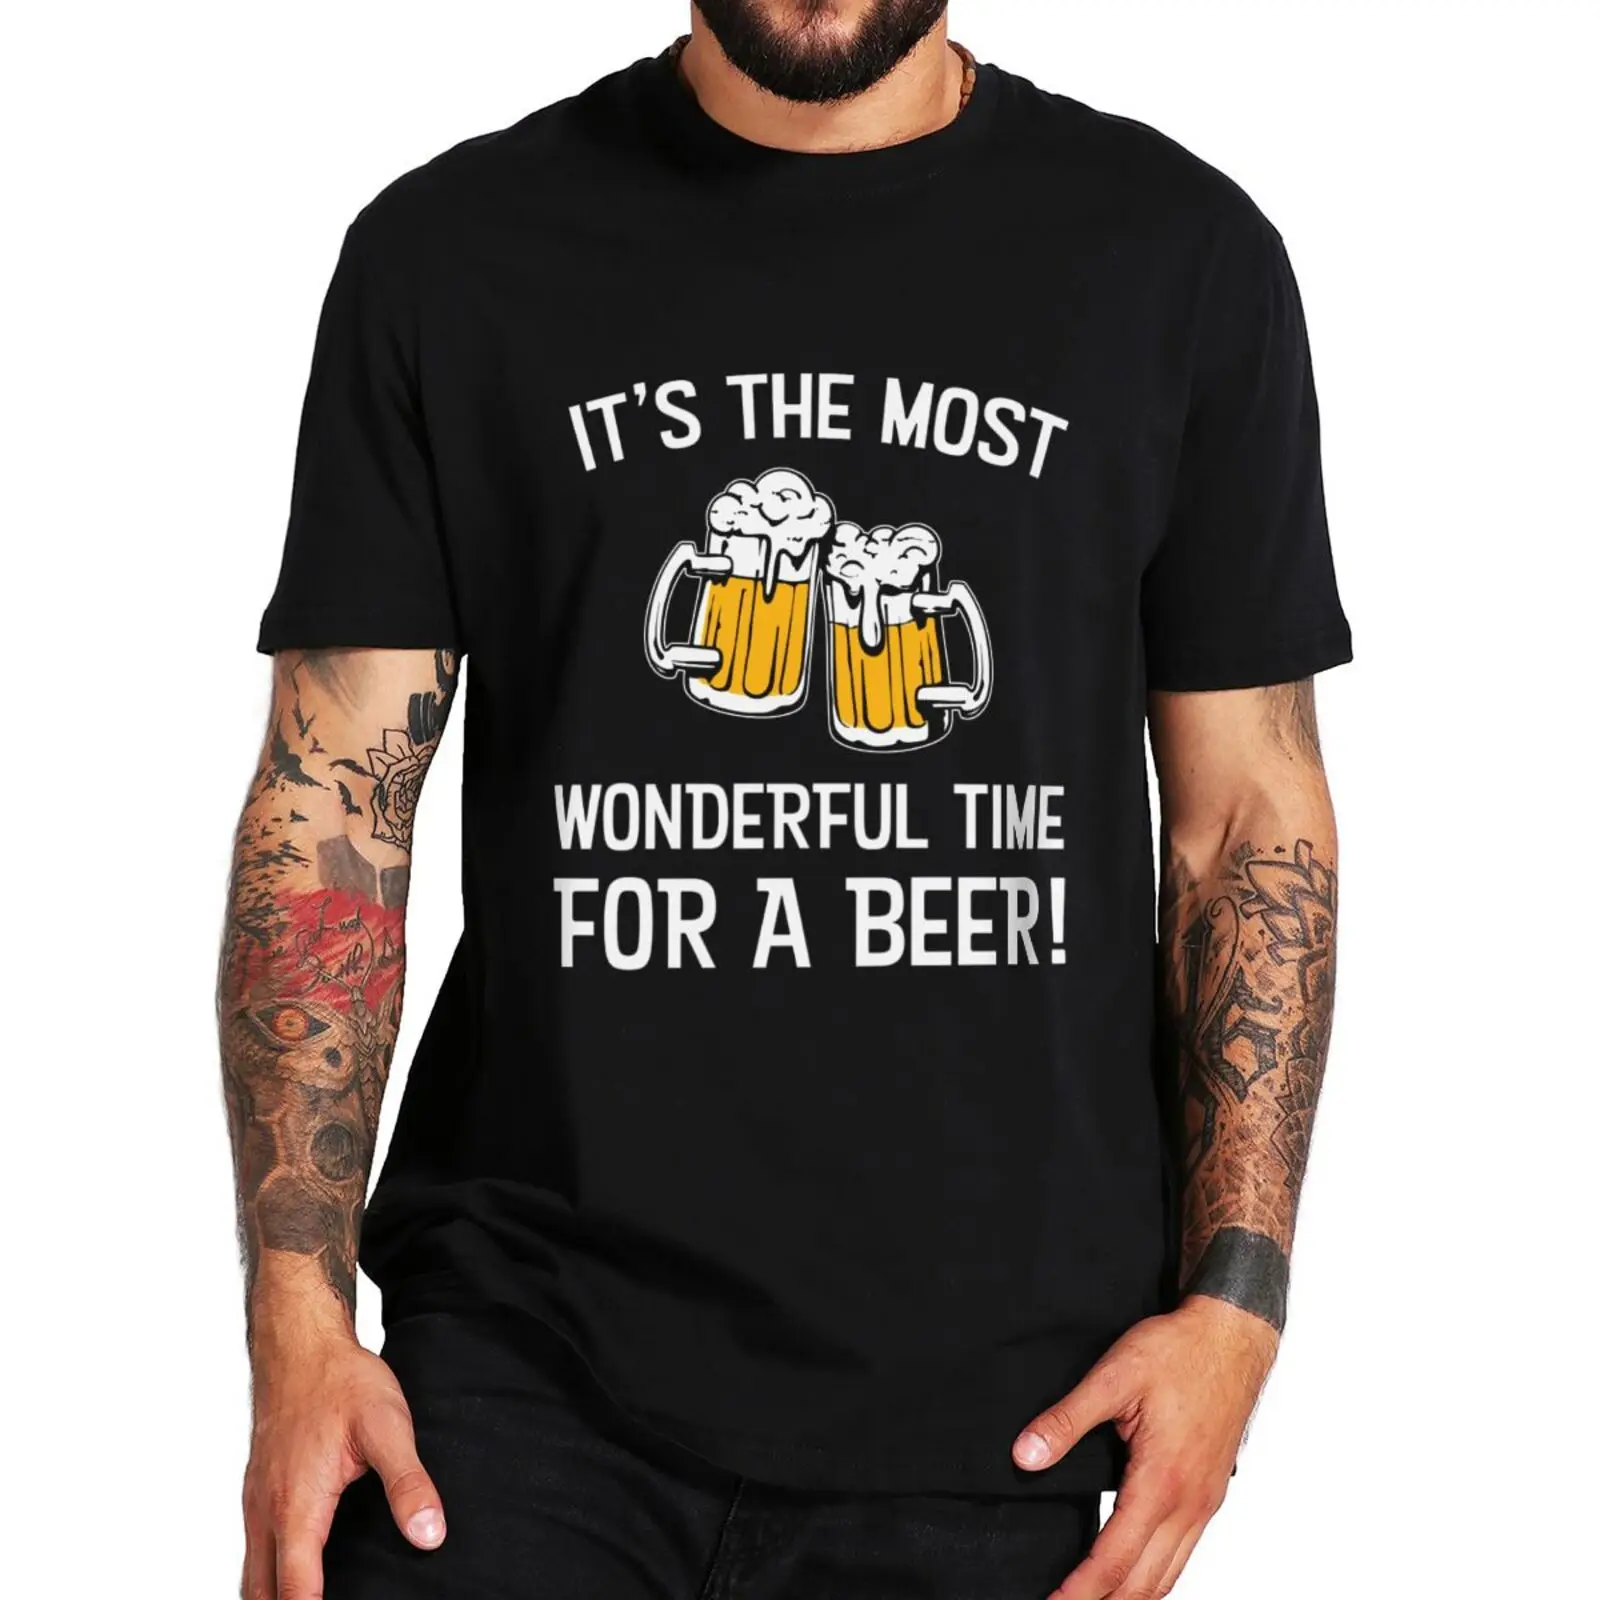 

Футболка забавное пиво с цитатами Смешные питьевые влюбленные футболки повседневные 100% хлопковые унисекс Мягкая футболка большого размера d европейский размер